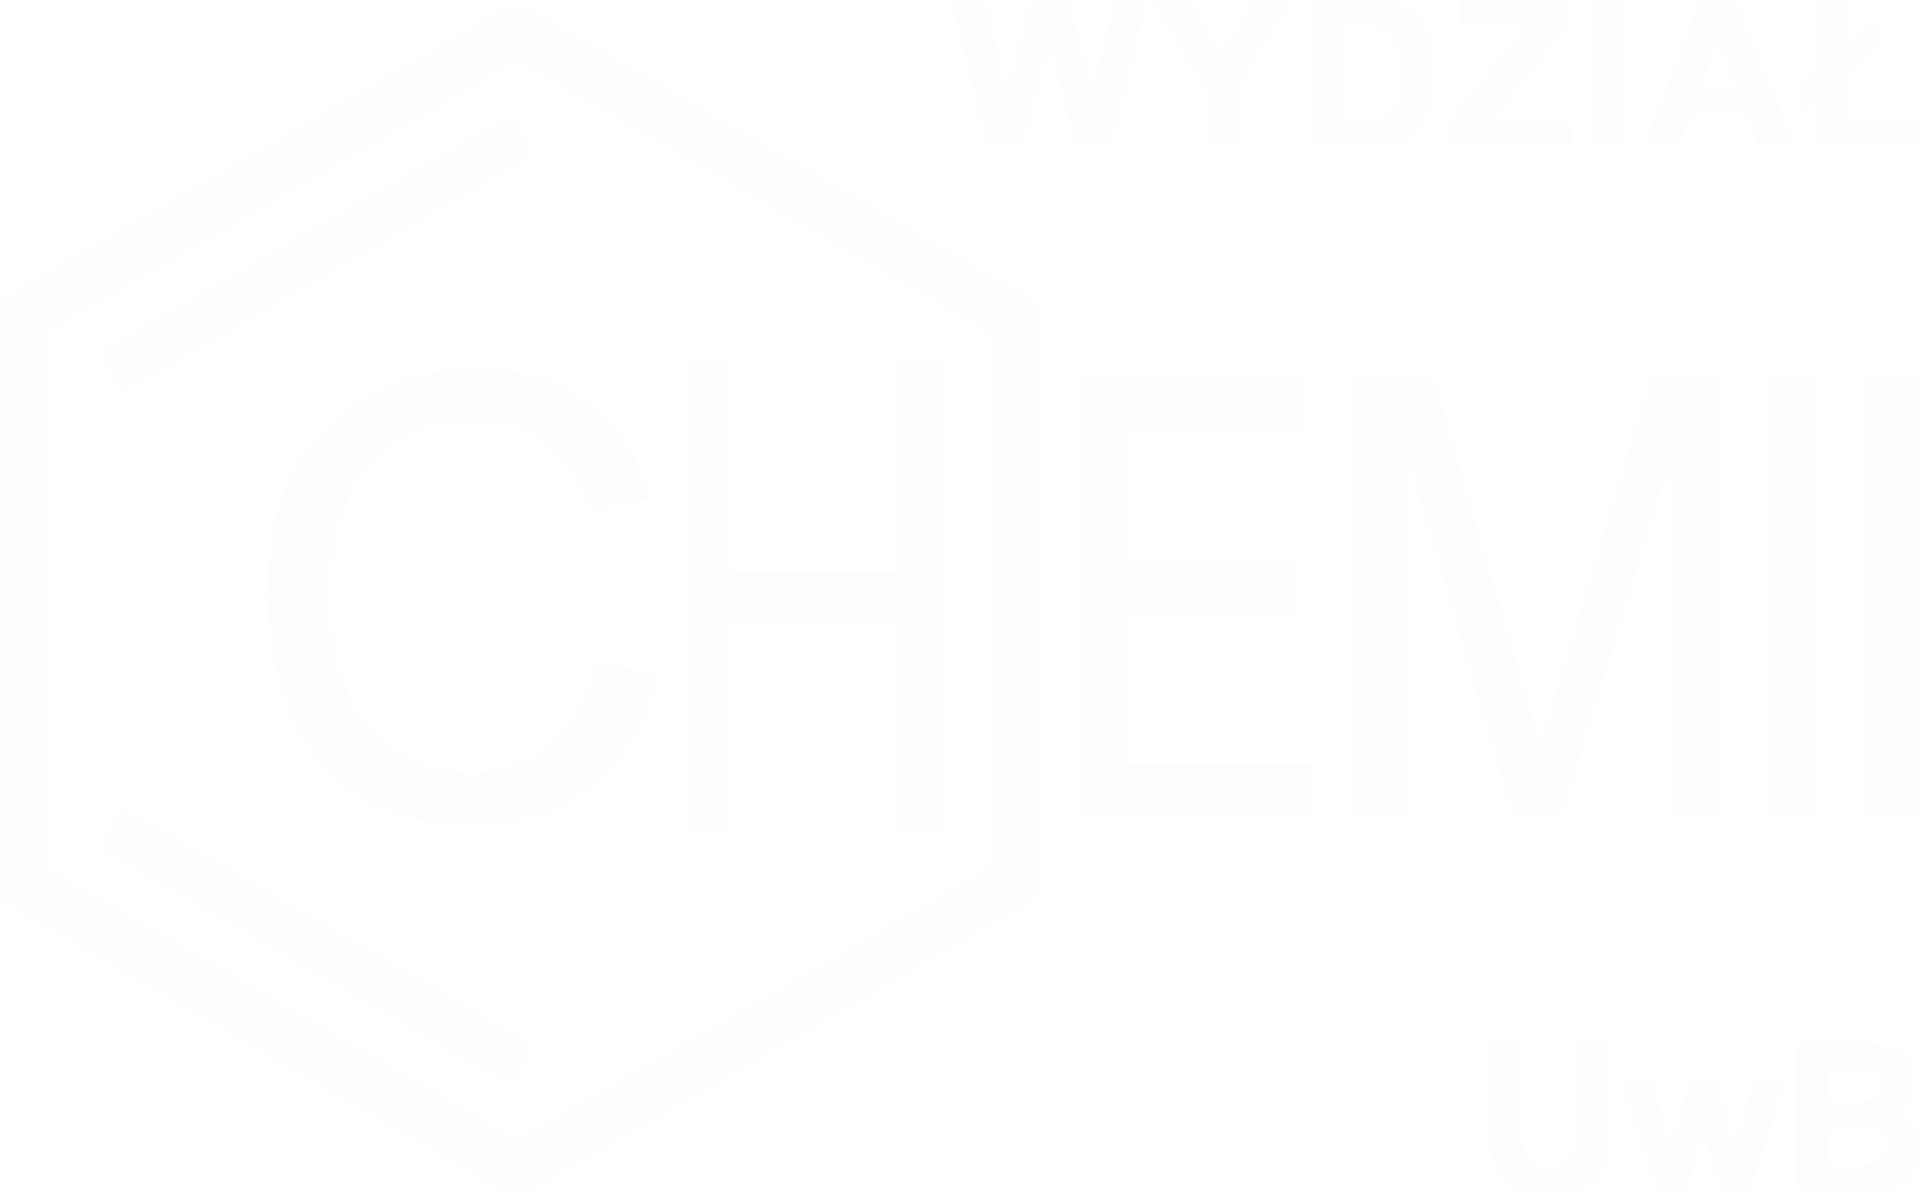 logo Wydziału Chemii